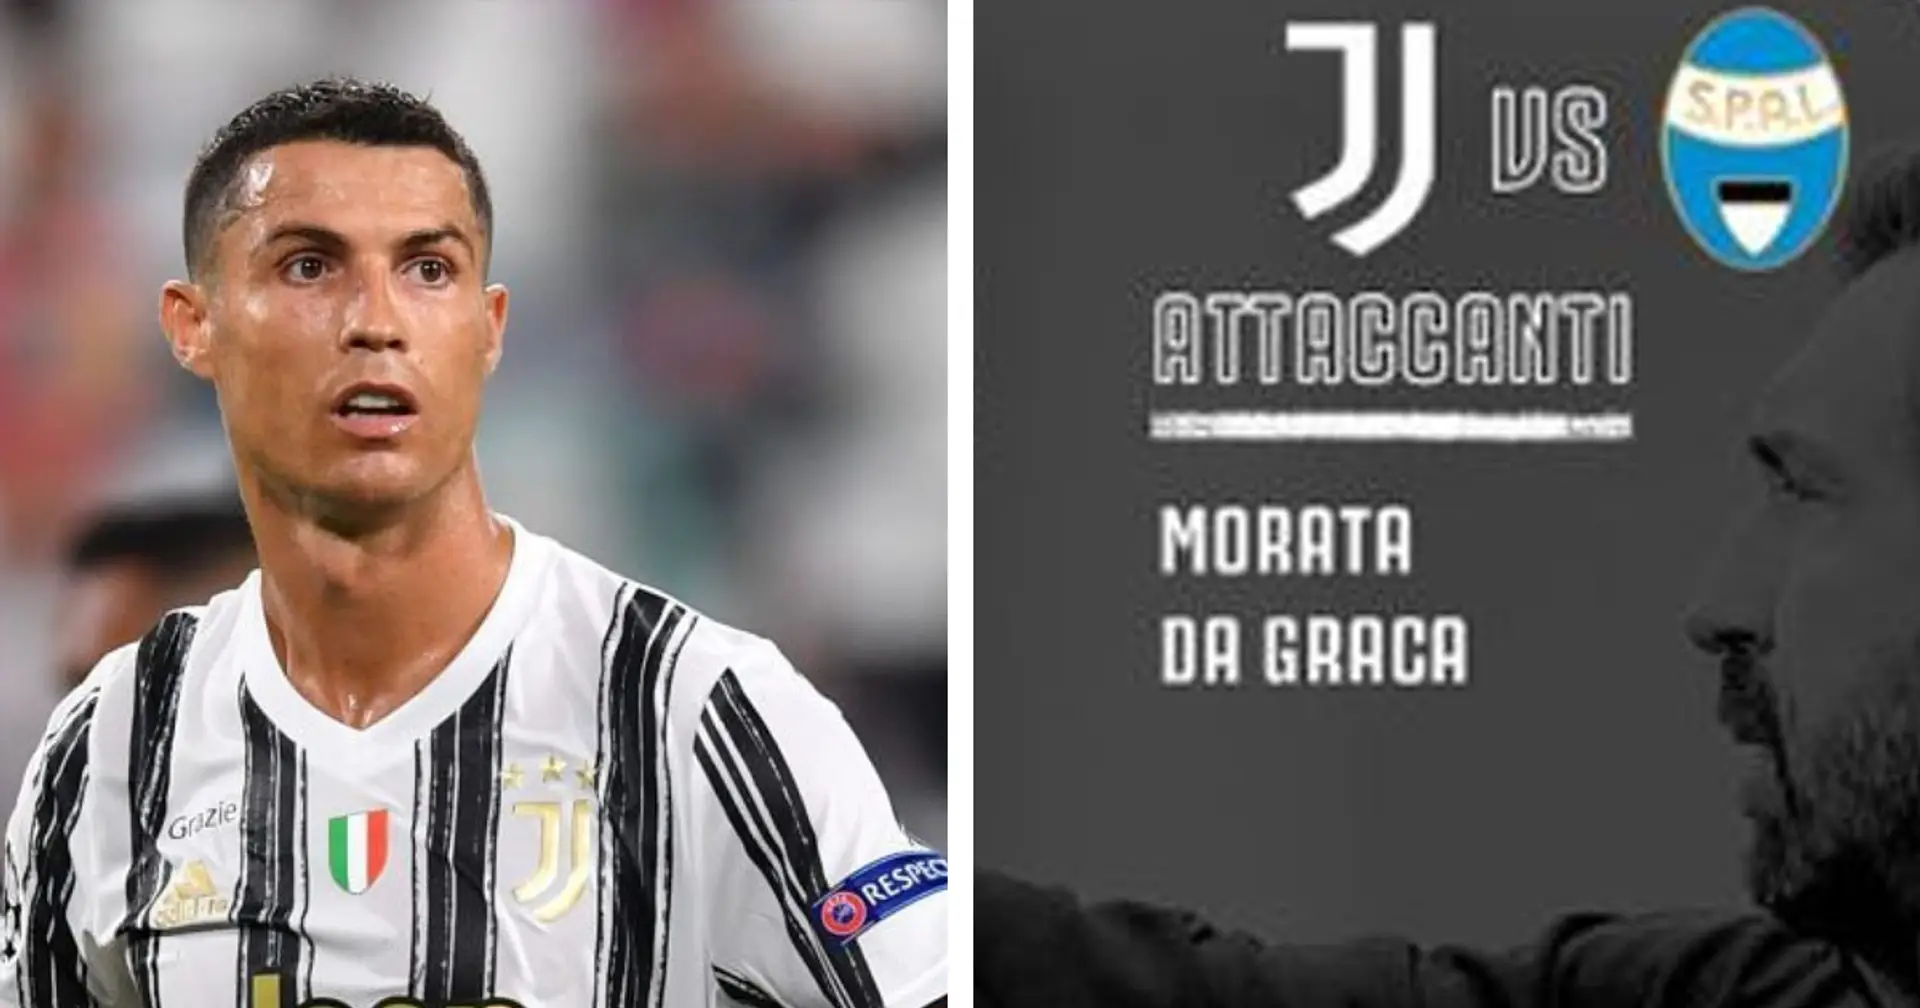 UFFICIALE | I convocati di Pirlo per Juventus-Spal: torna Alex Sandro, OUT a sorpresa Cristiano Ronaldo